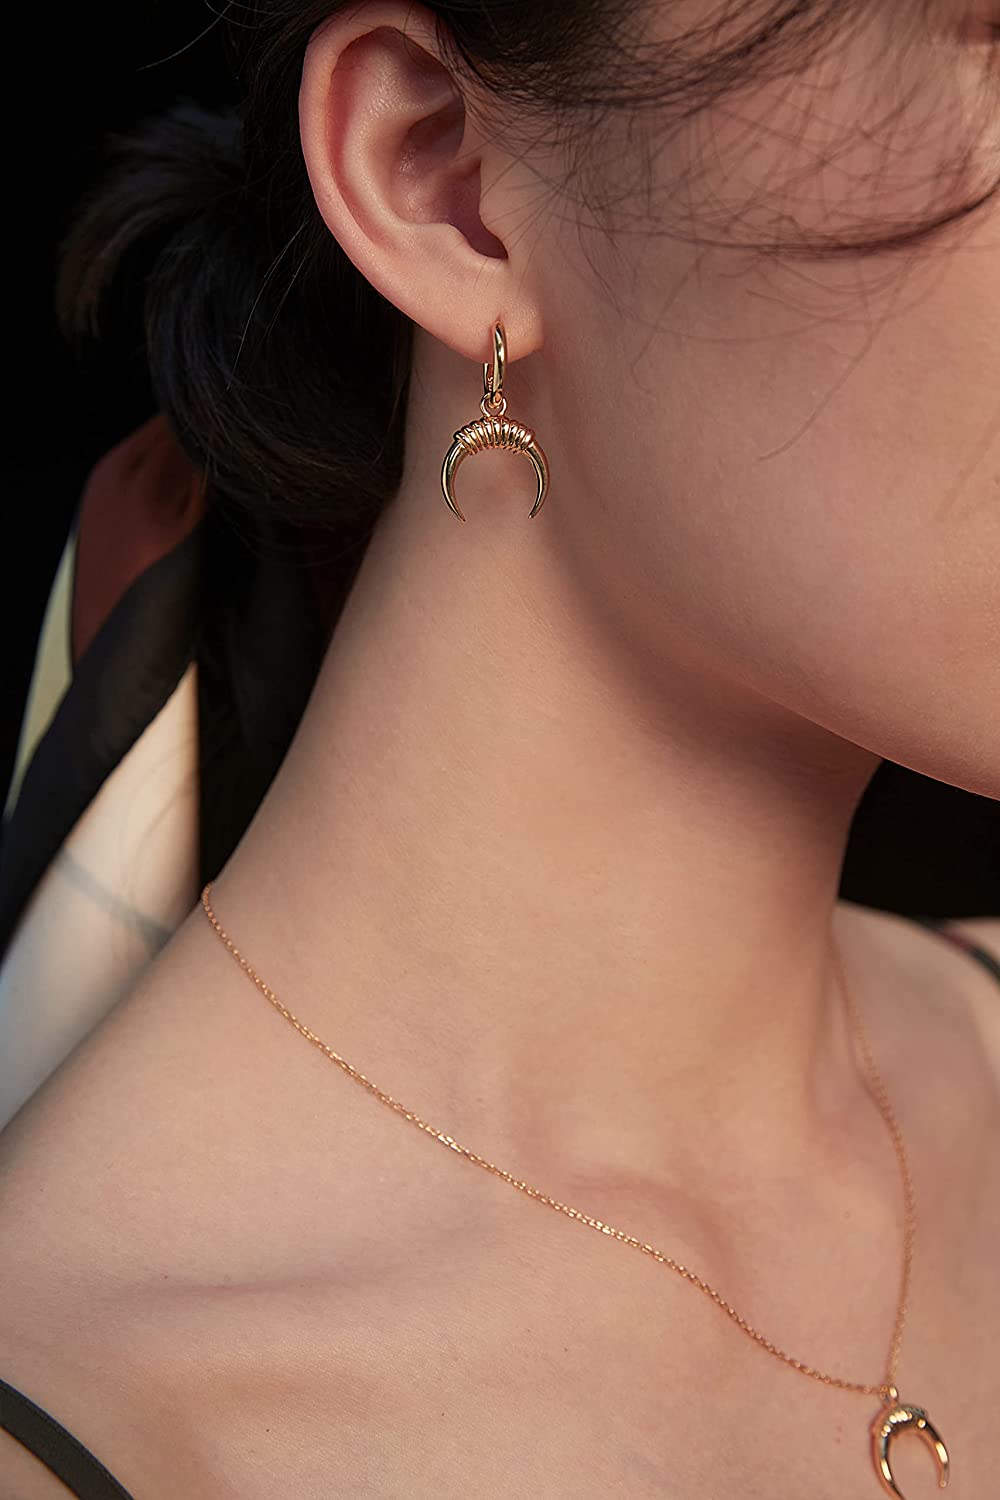 Vadmans Earrings for Women-14K Gold Plated Moon Earrings Cute Crescent Dangle Drop Earrings for Women